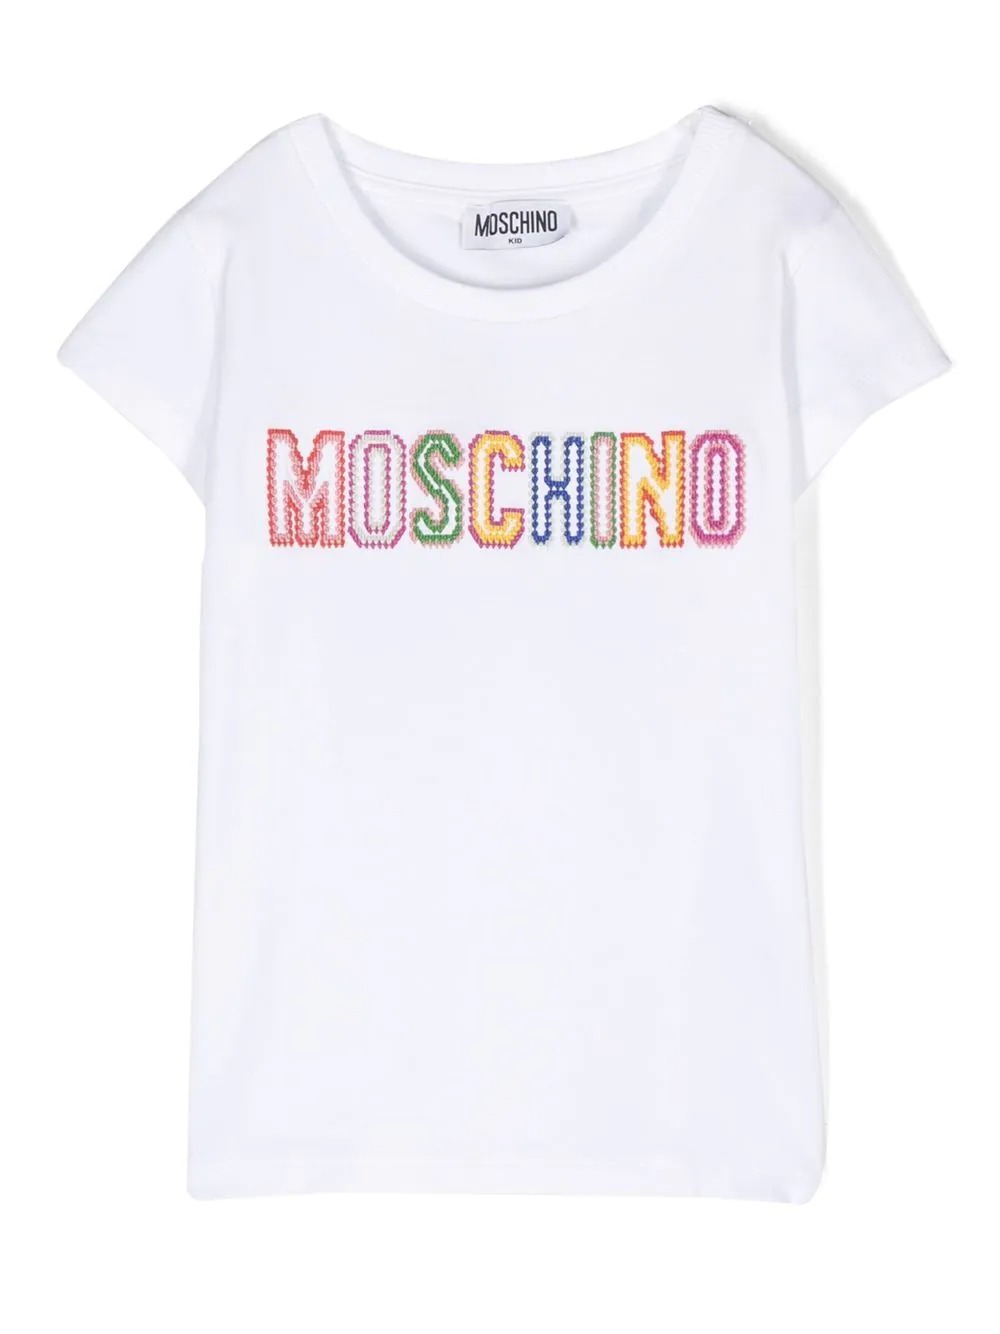 Moschino Women's underwear in cotton jersey Moschino X My Little